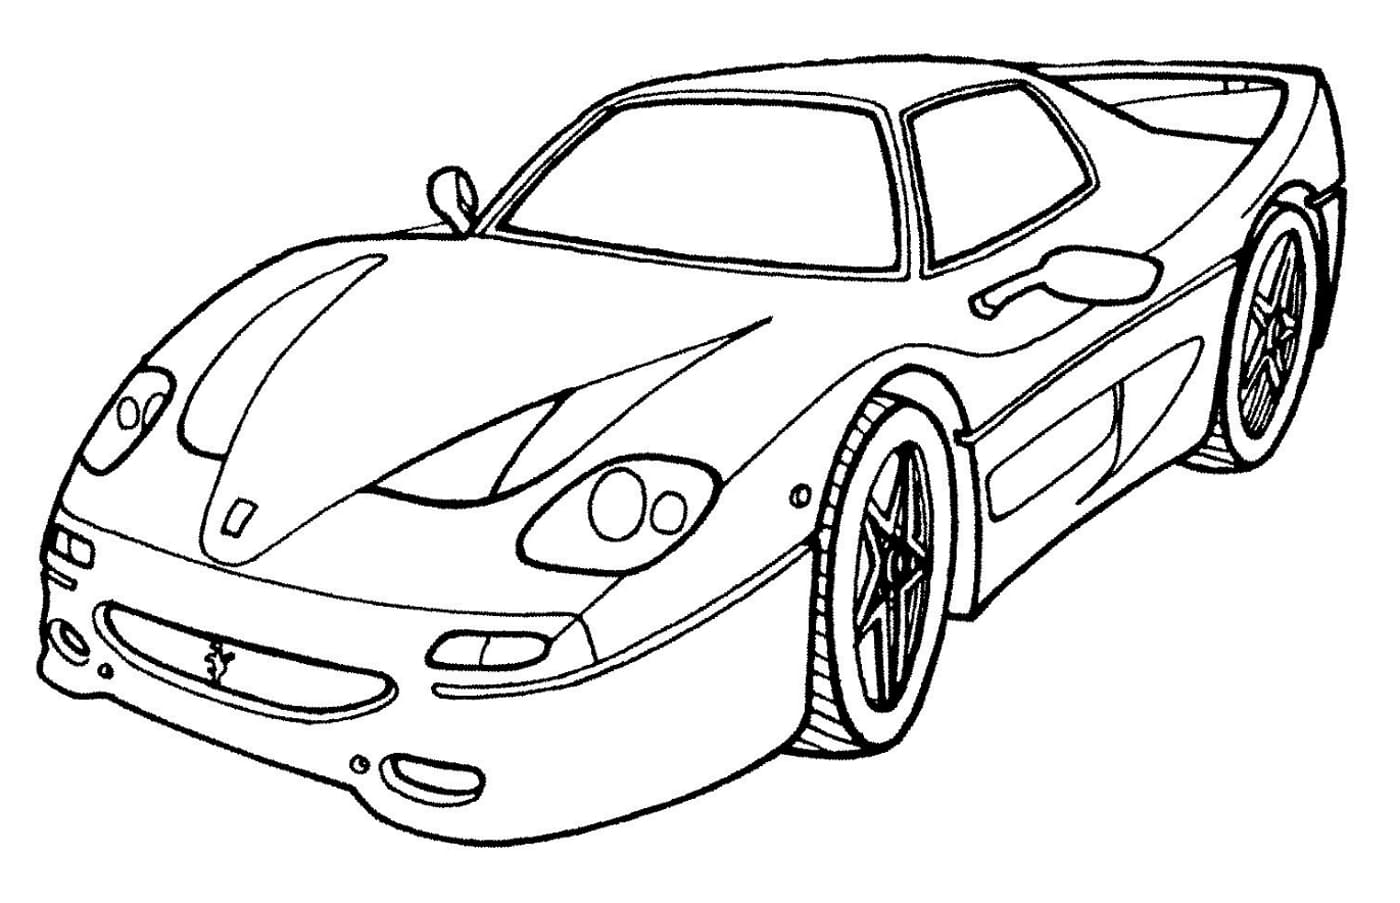 Desenho para colorir Corrida de carros em preto e branco · Creative Fabrica